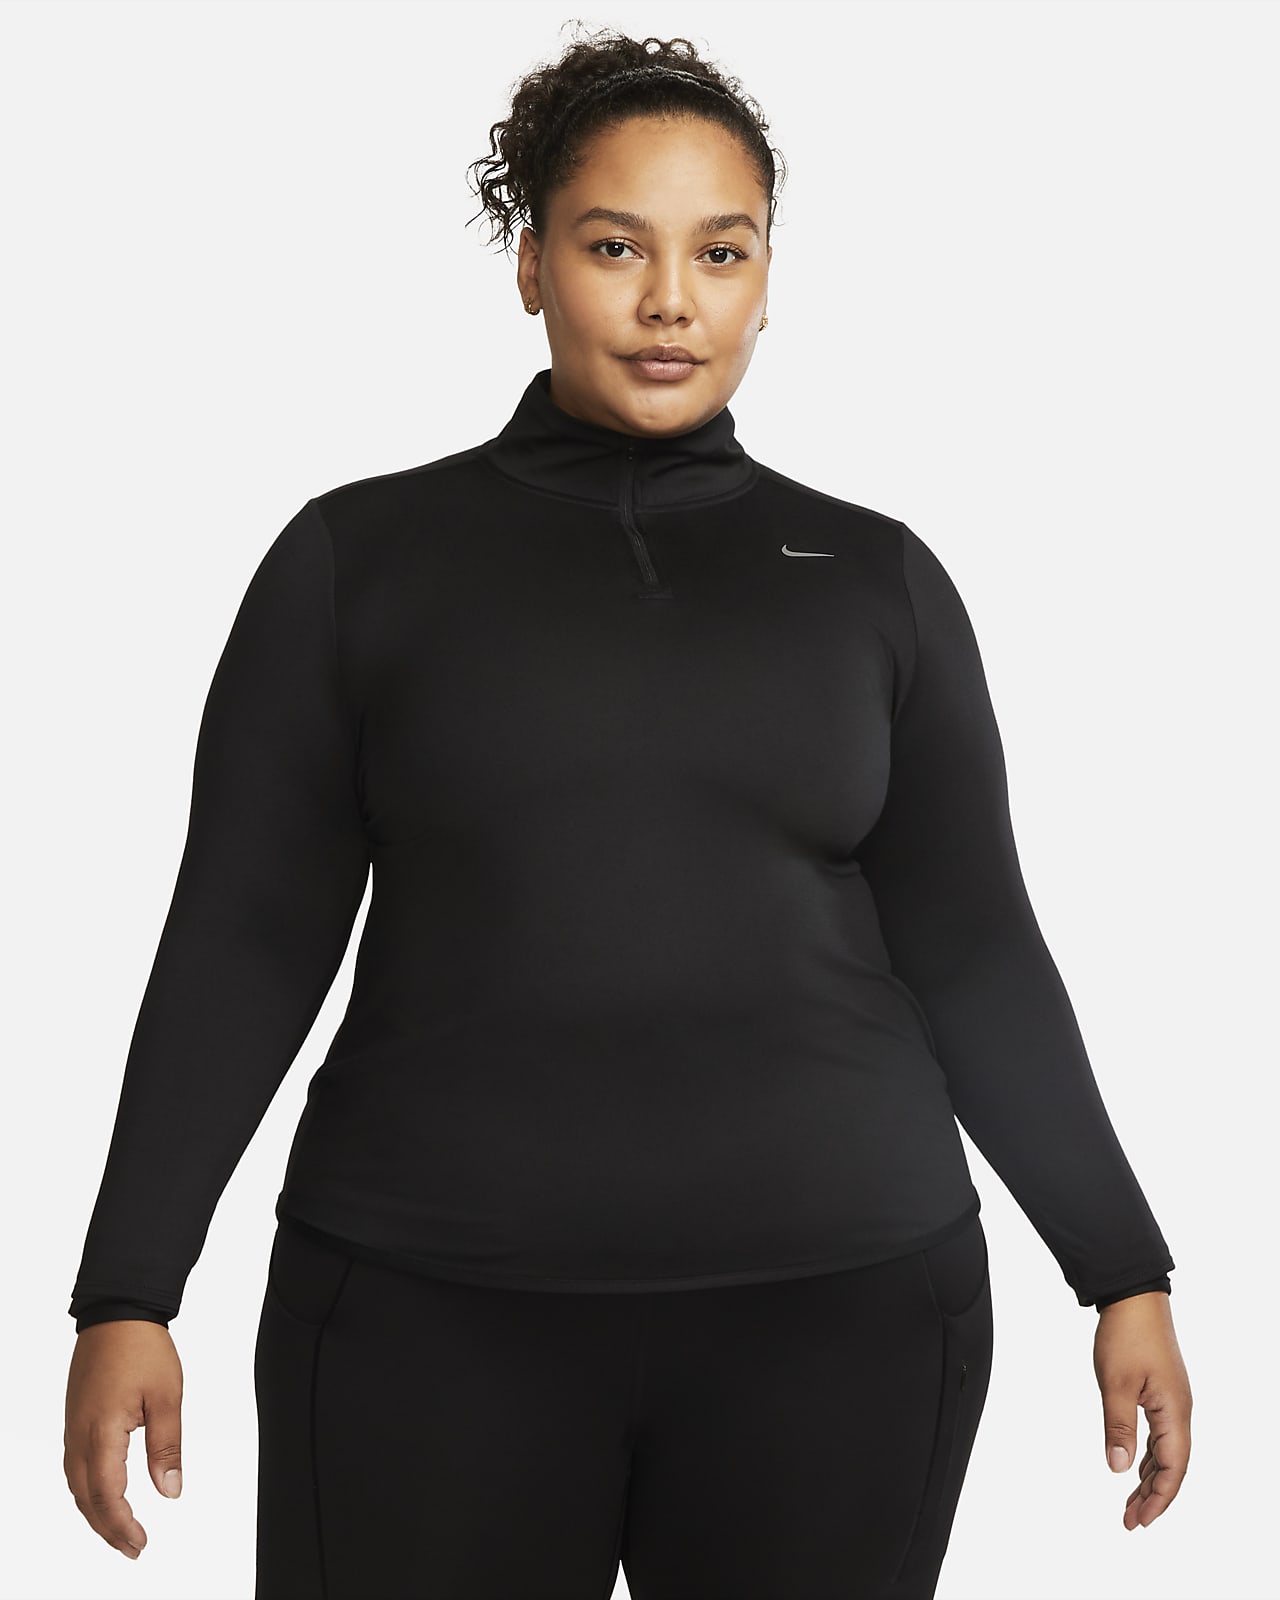 Nike Dri-FIT Swift Element rövid cipzáras női futófelső (plus size méret)